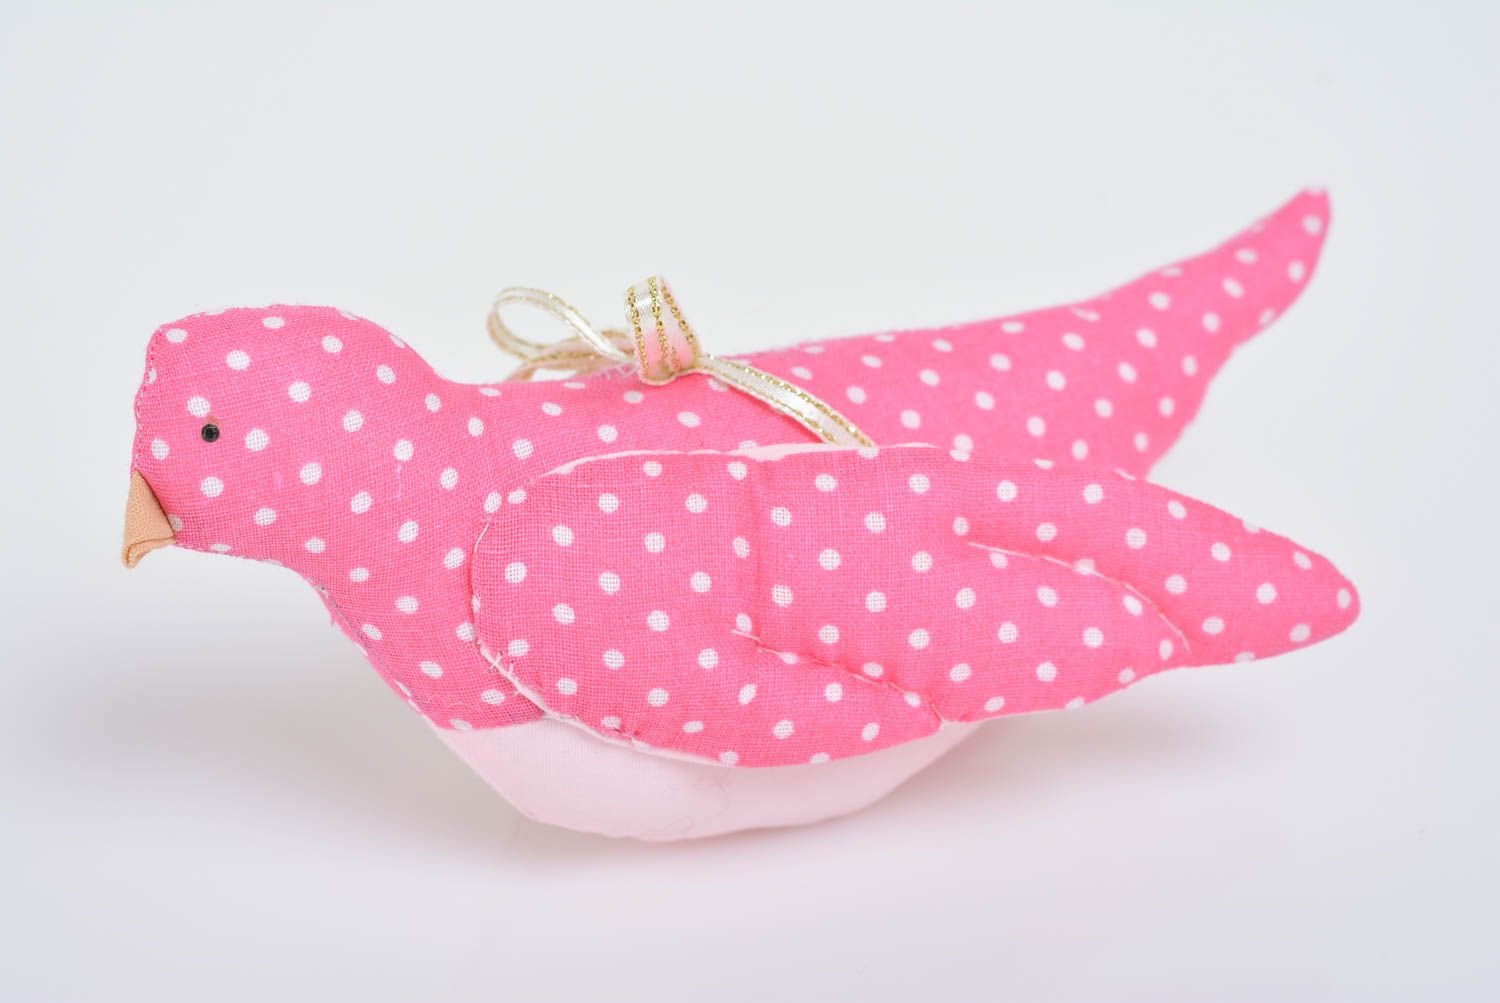 Интерьерная подвеска птичка розовая в горошек мягкая из хлопка ручной работы фото 1